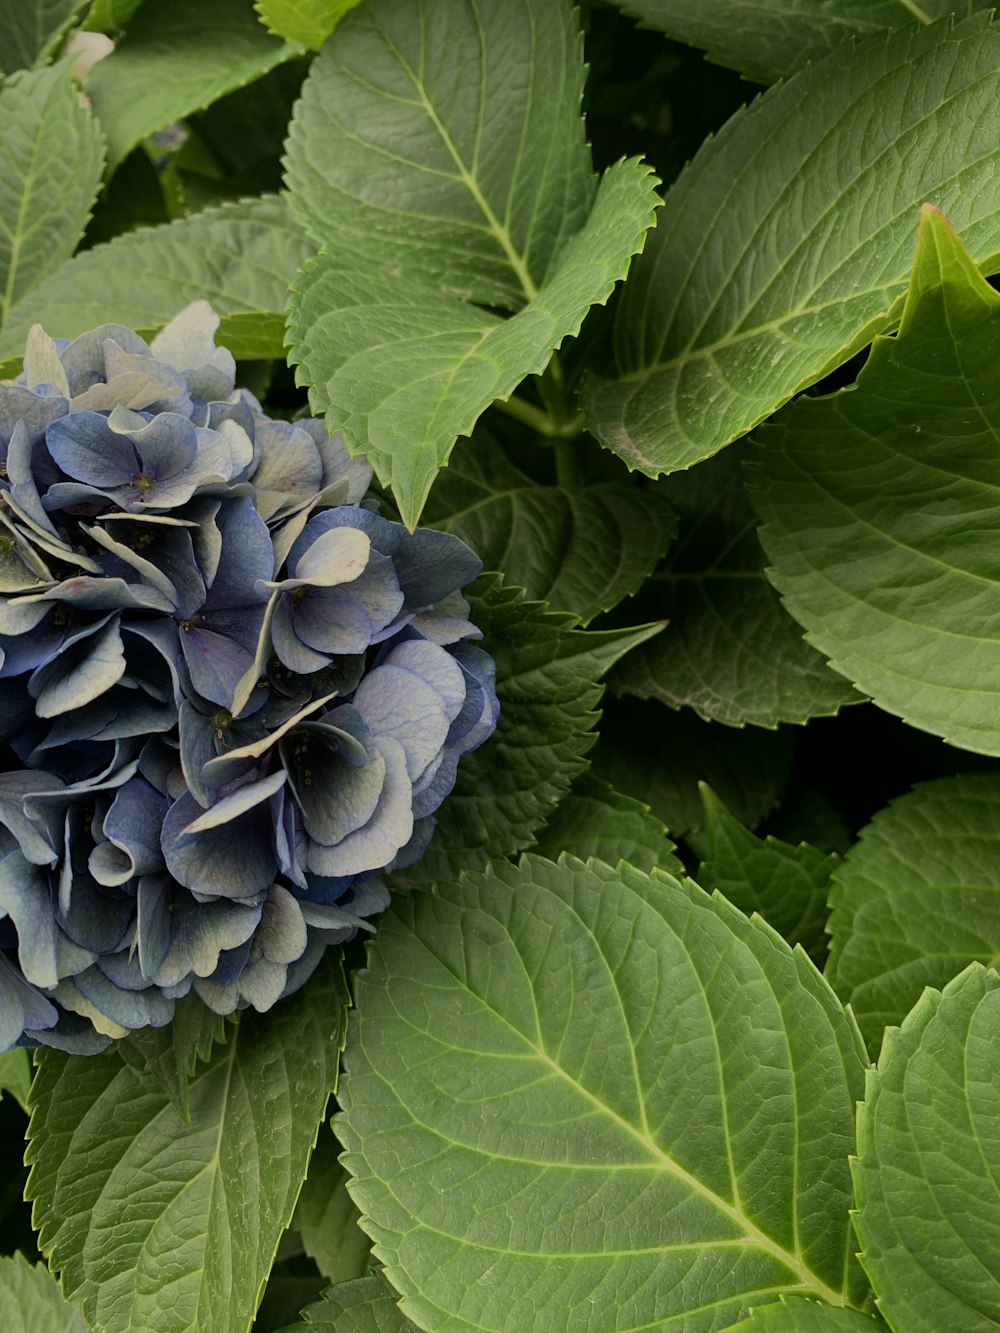 hortensias bleus en fleurs pendant la journée